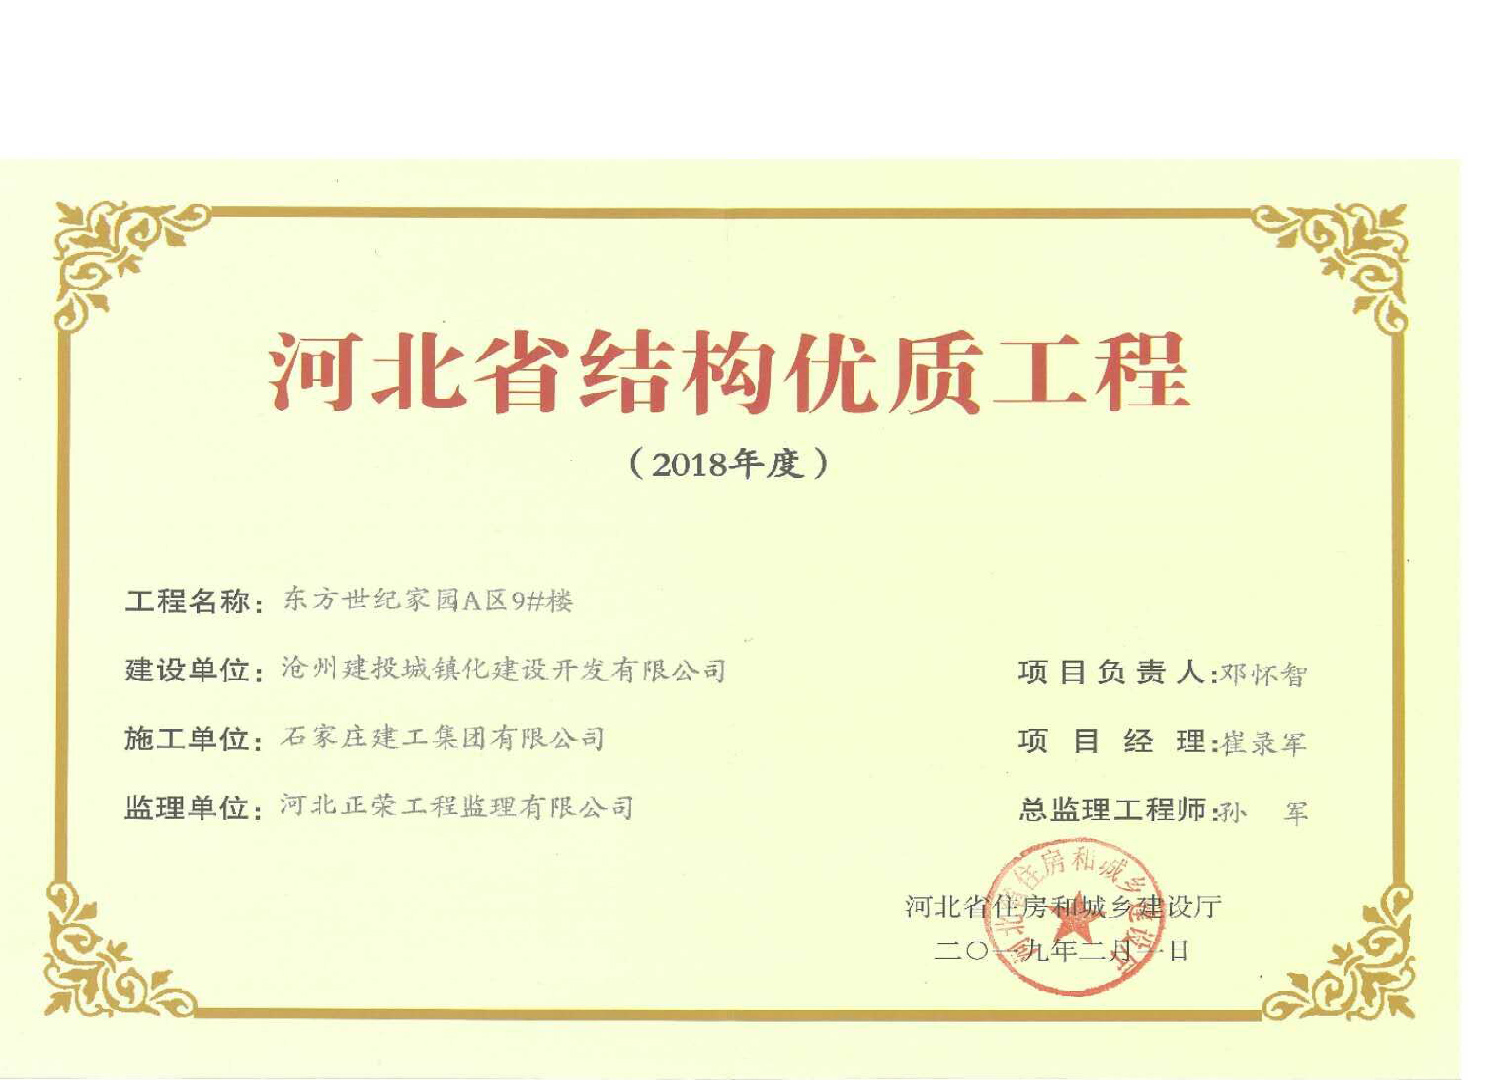 集團公司滄州東方世紀家園工程喜獲2018年度河北省結構優質工程獎